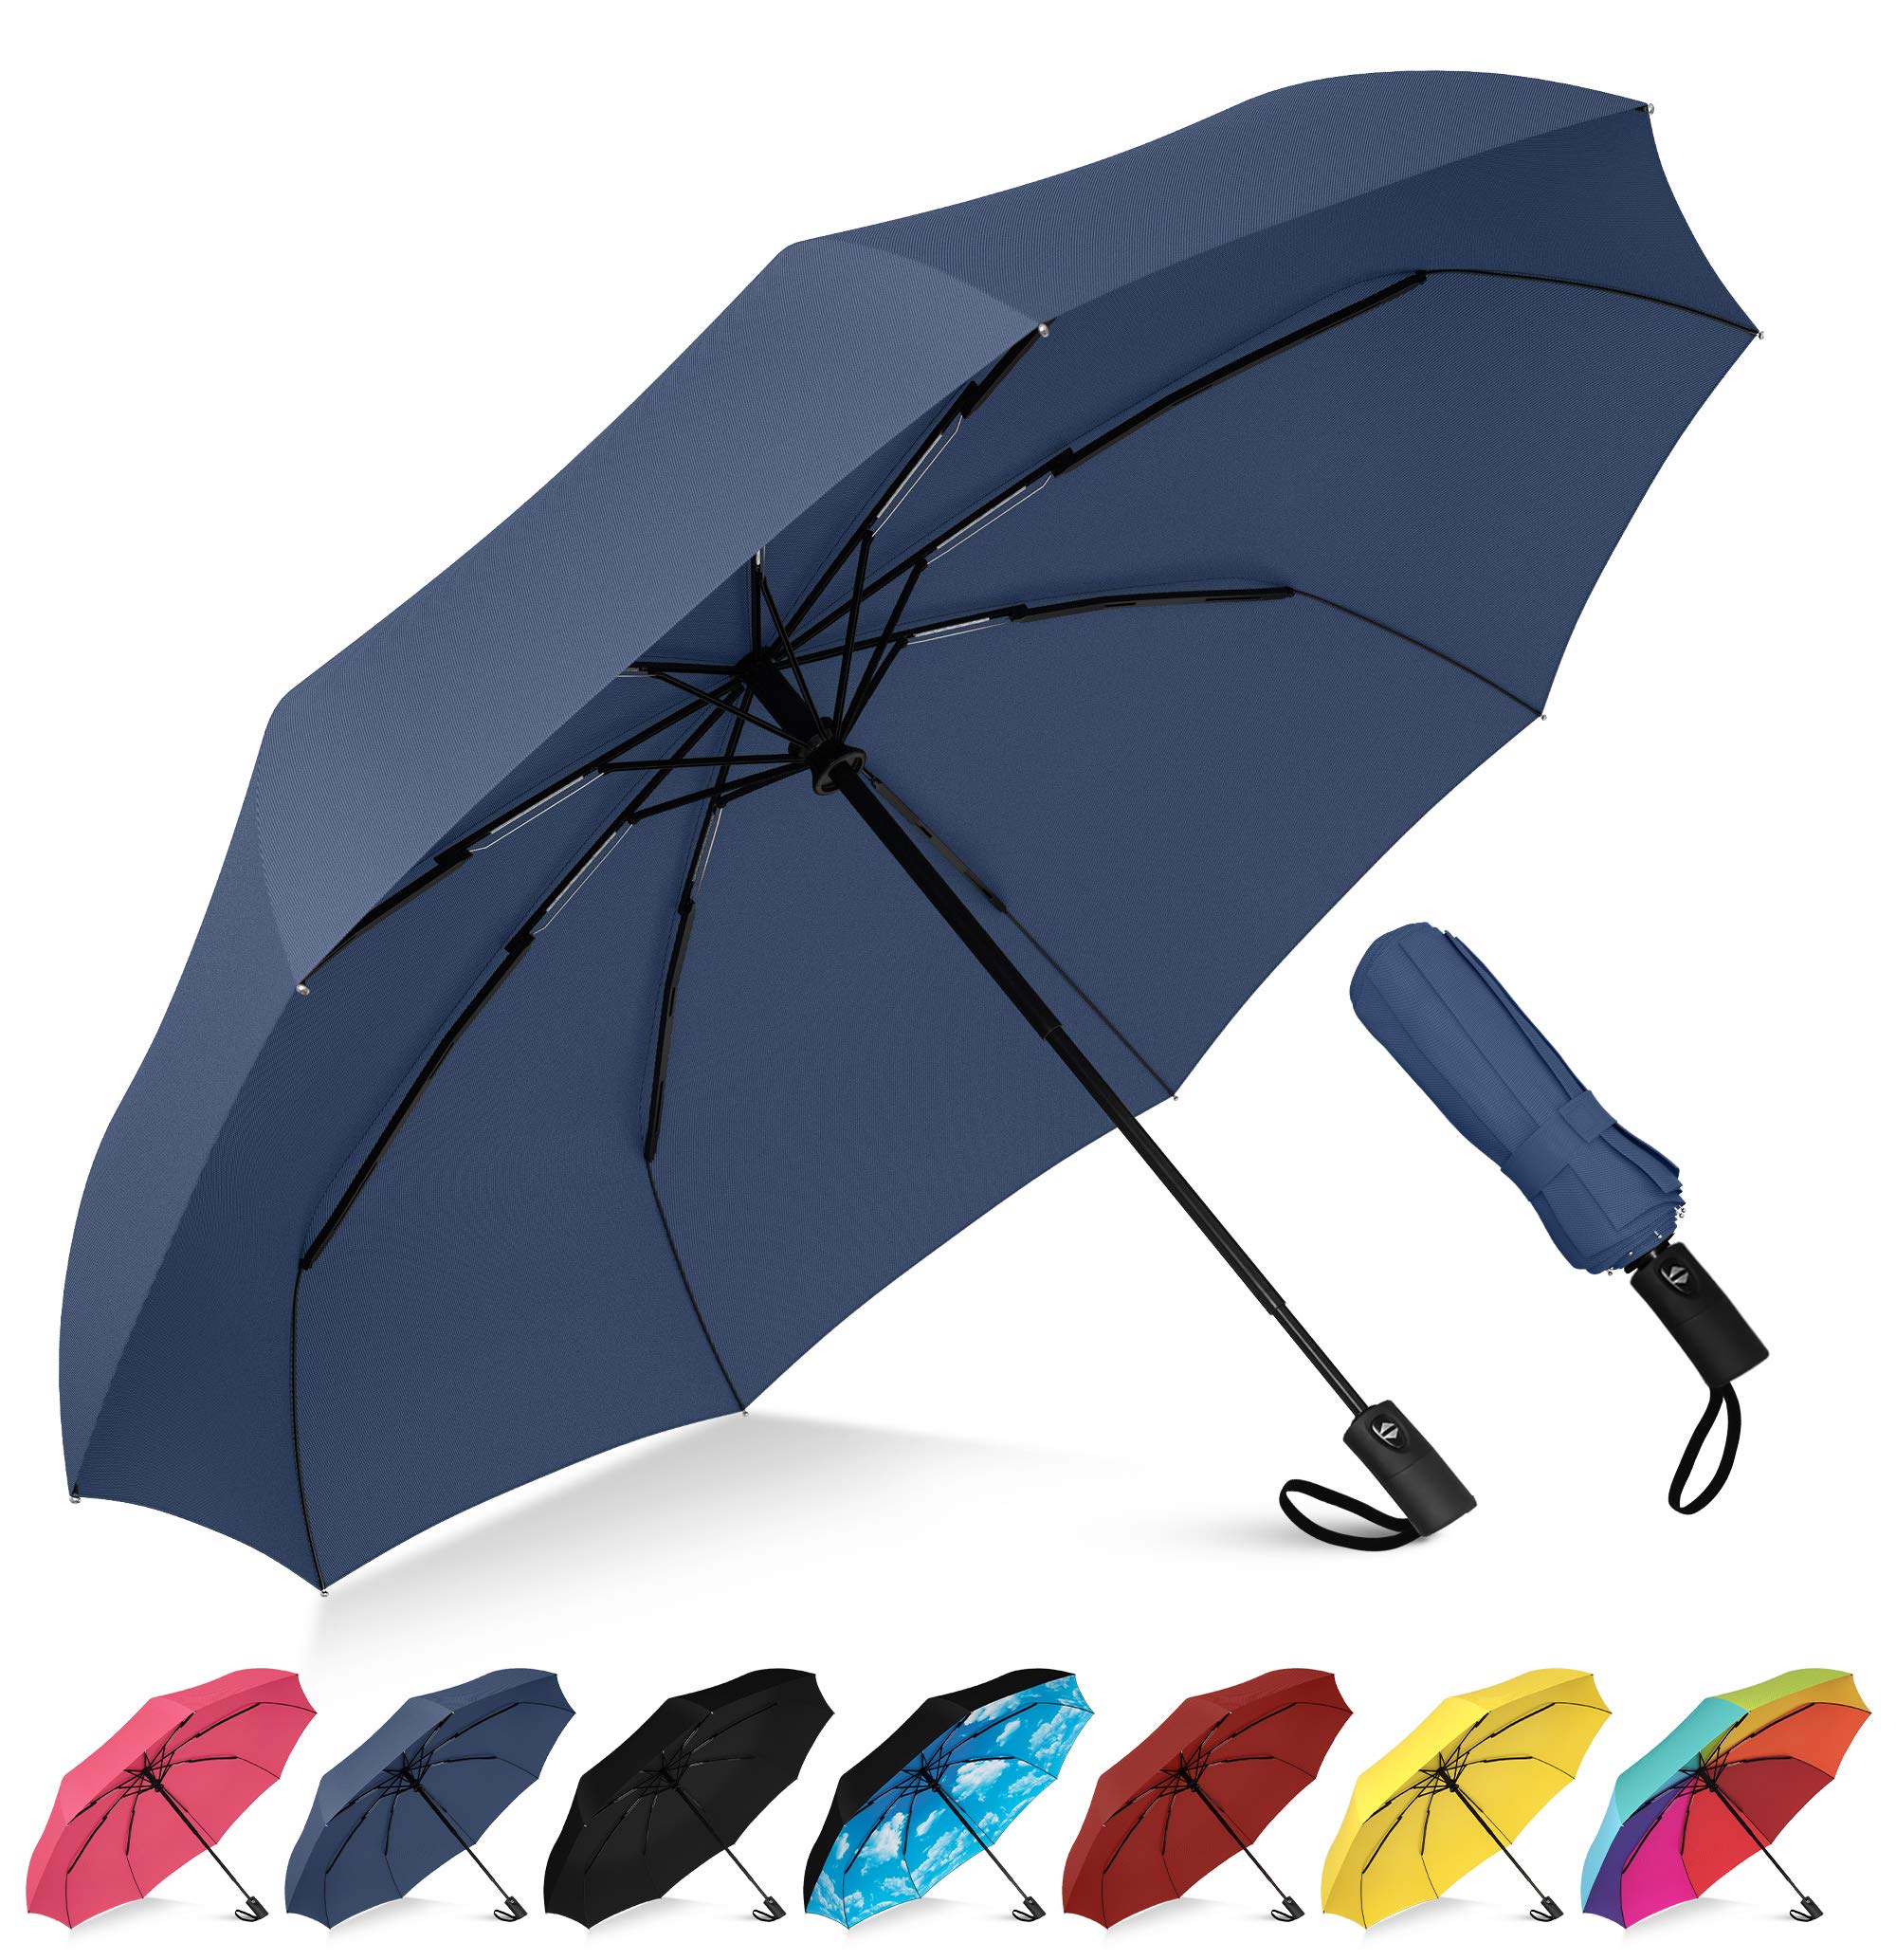 travel umbrella for rain